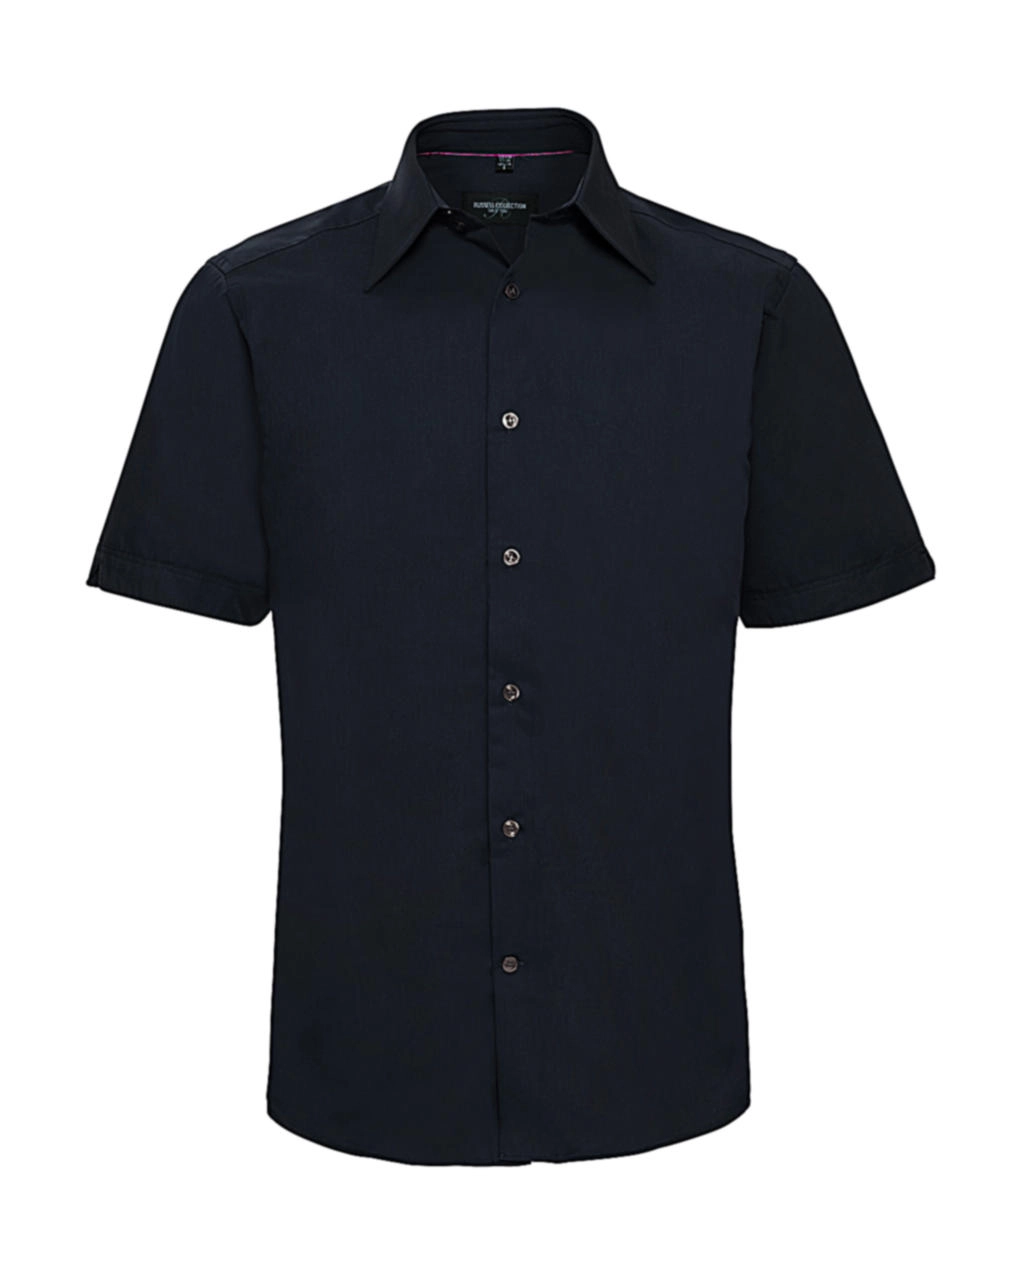 Tencel® Fitted Shirt zum Besticken und Bedrucken in der Farbe Navy mit Ihren Logo, Schriftzug oder Motiv.